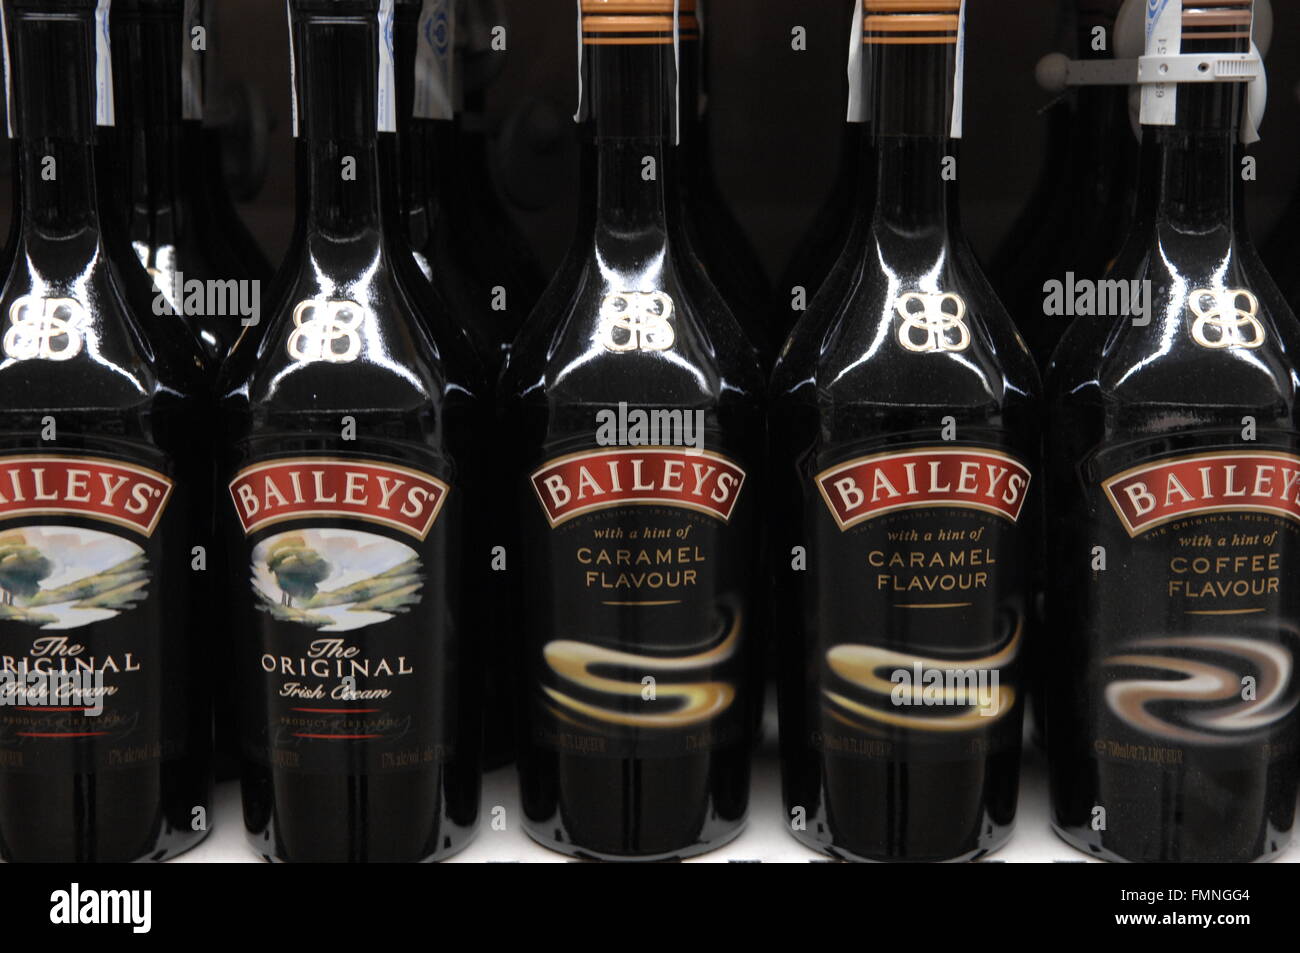 Una imagen de una fila del popular licor de crema irlandesa estilo 'Baileys' Foto de stock